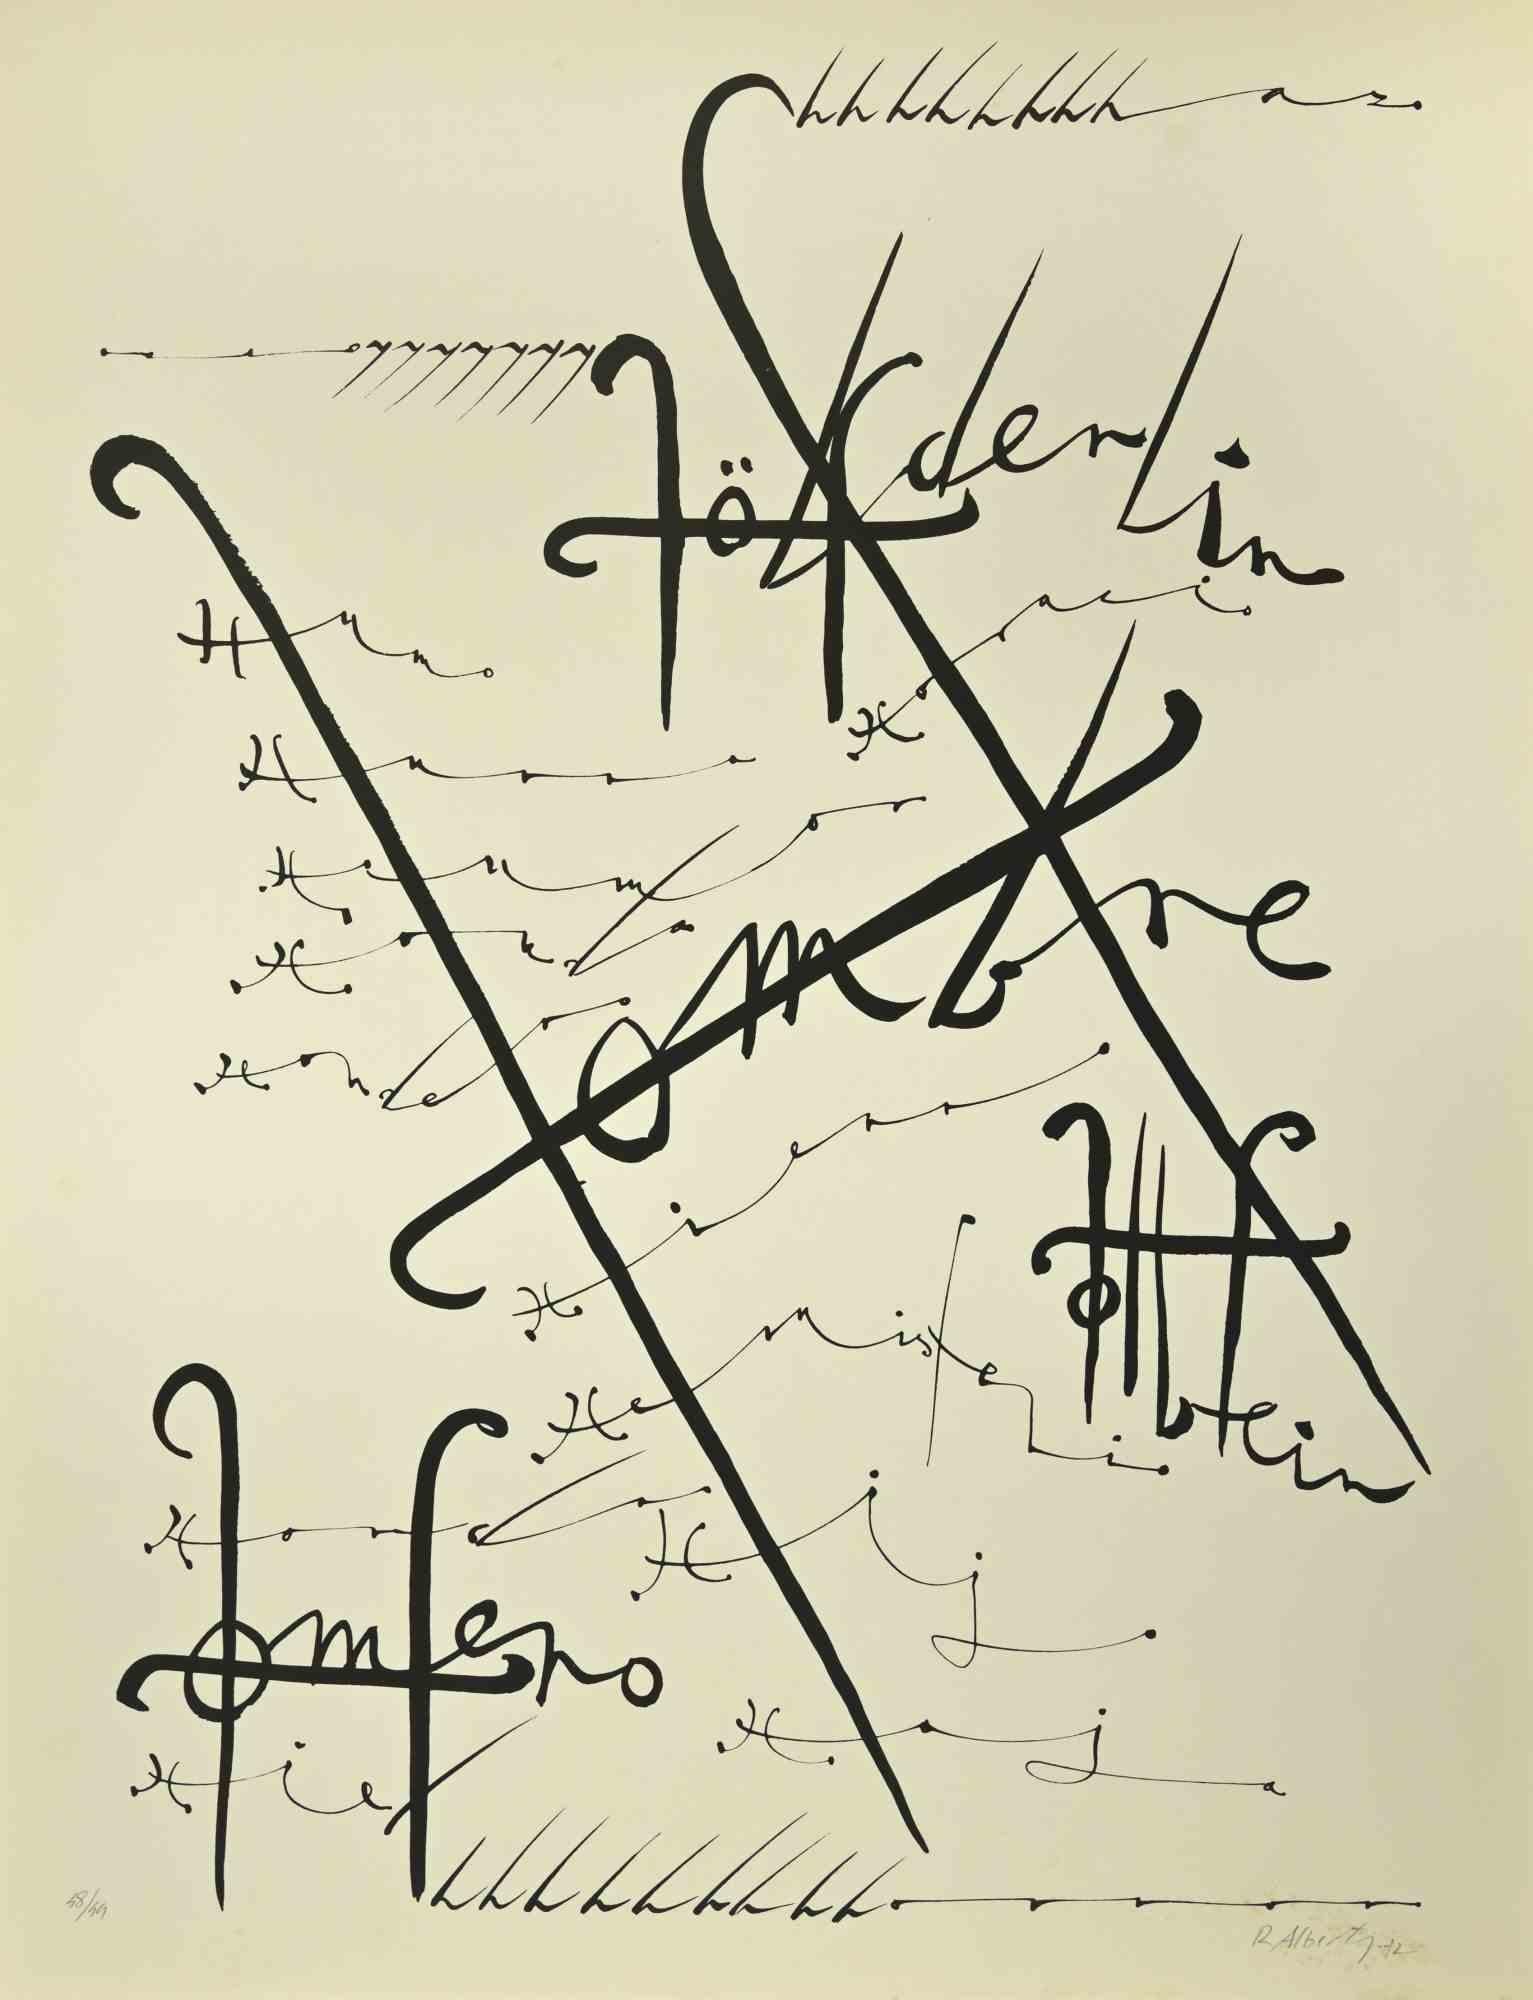 La lettre H de la série Alphabet est une lithographie réalisée par Rafael Alberti en 1972.

Signé et daté à la main dans la marge inférieure droite.

Numéroté dans la marge inférieure. Édition de 48/99 exemplaires.

Bonnes conditions.

L'œuvre